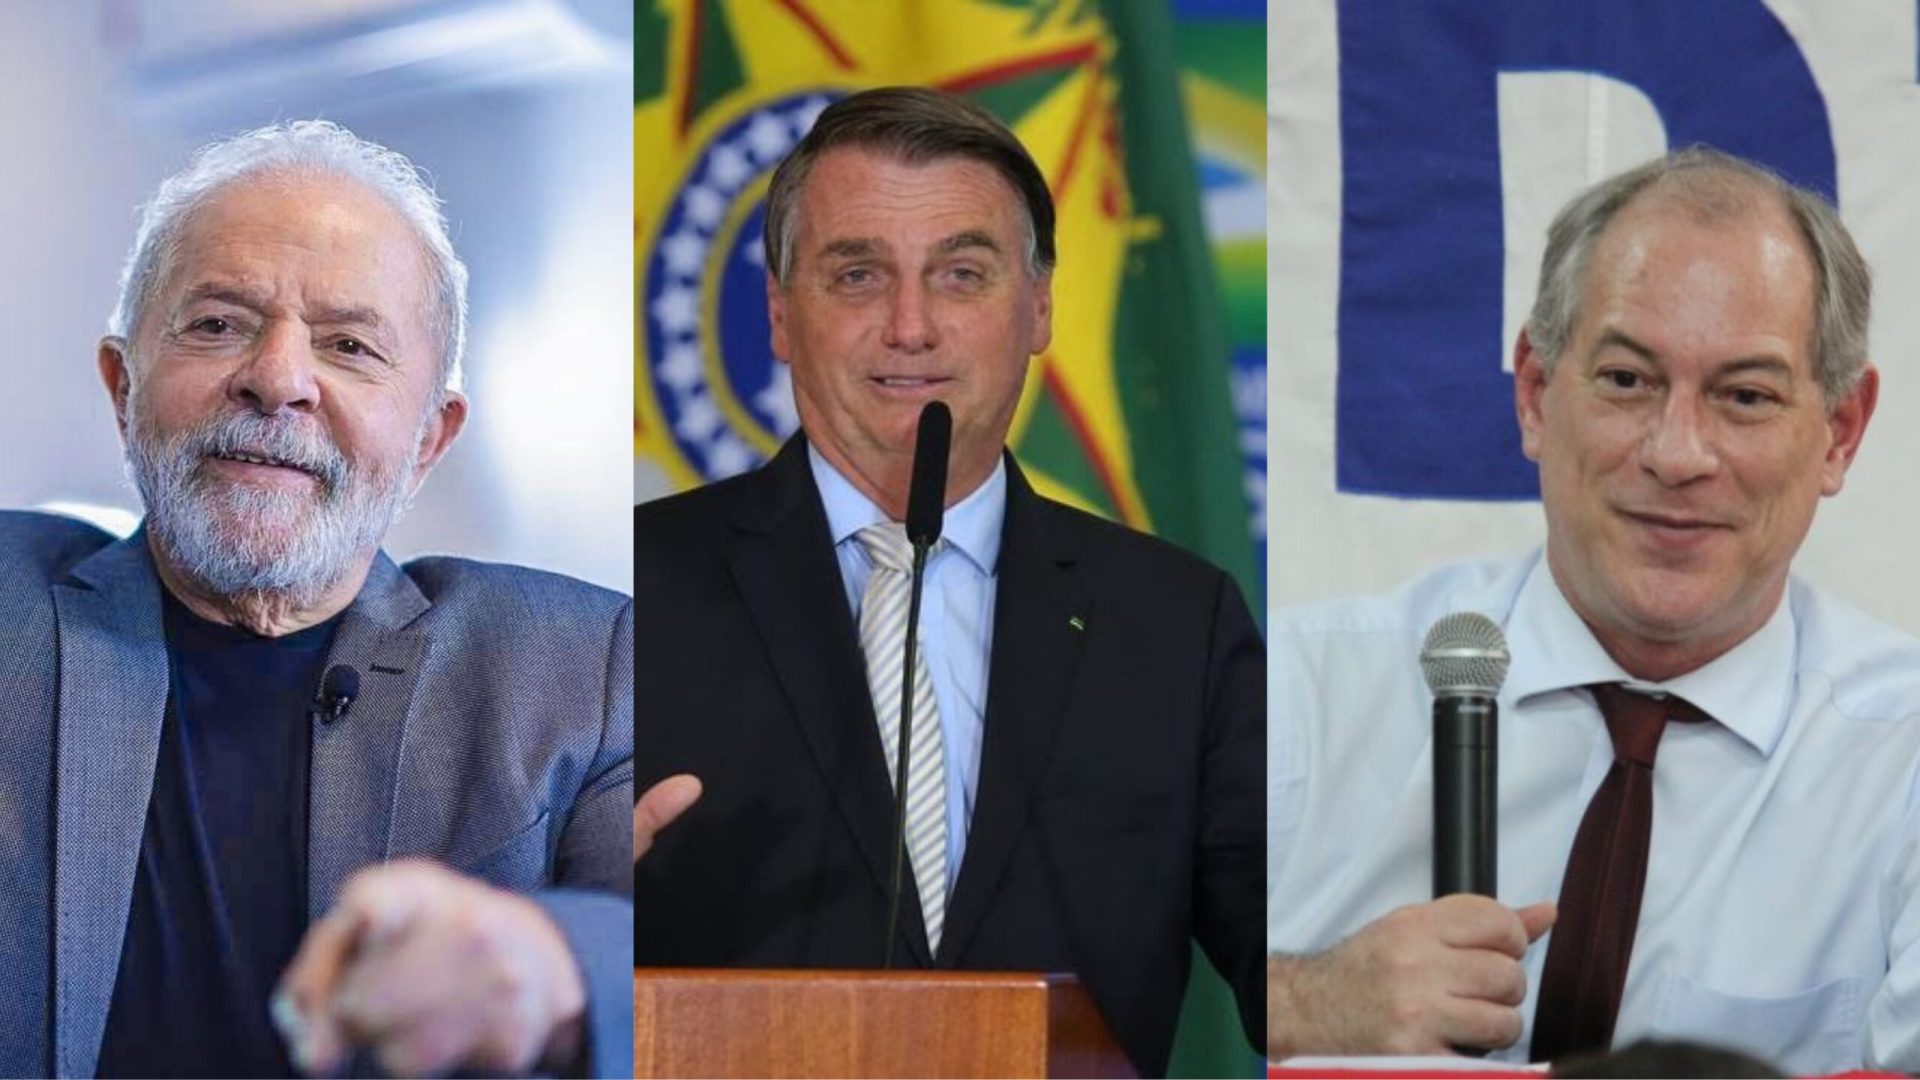 ELEIÇÕES 2022: candidatos à presidente tem PATRIMÔNIO divulgado pela imprensa